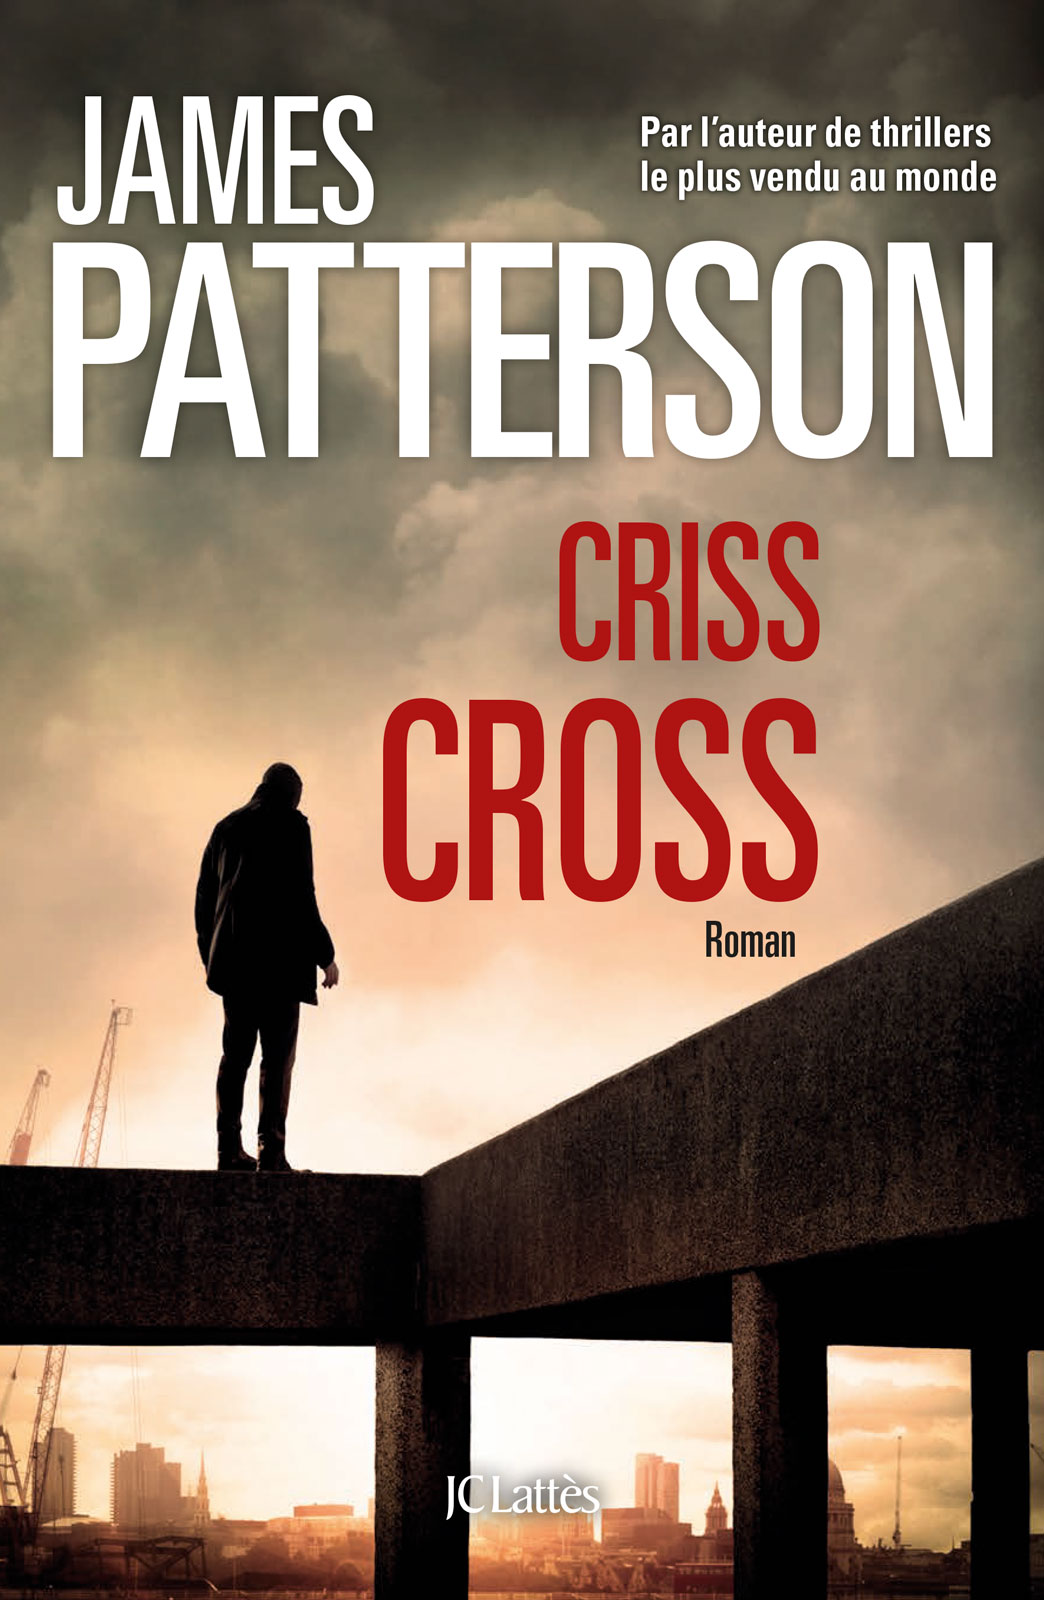 couverture de livre, book cover, Cris Cross, James Patterson, polar